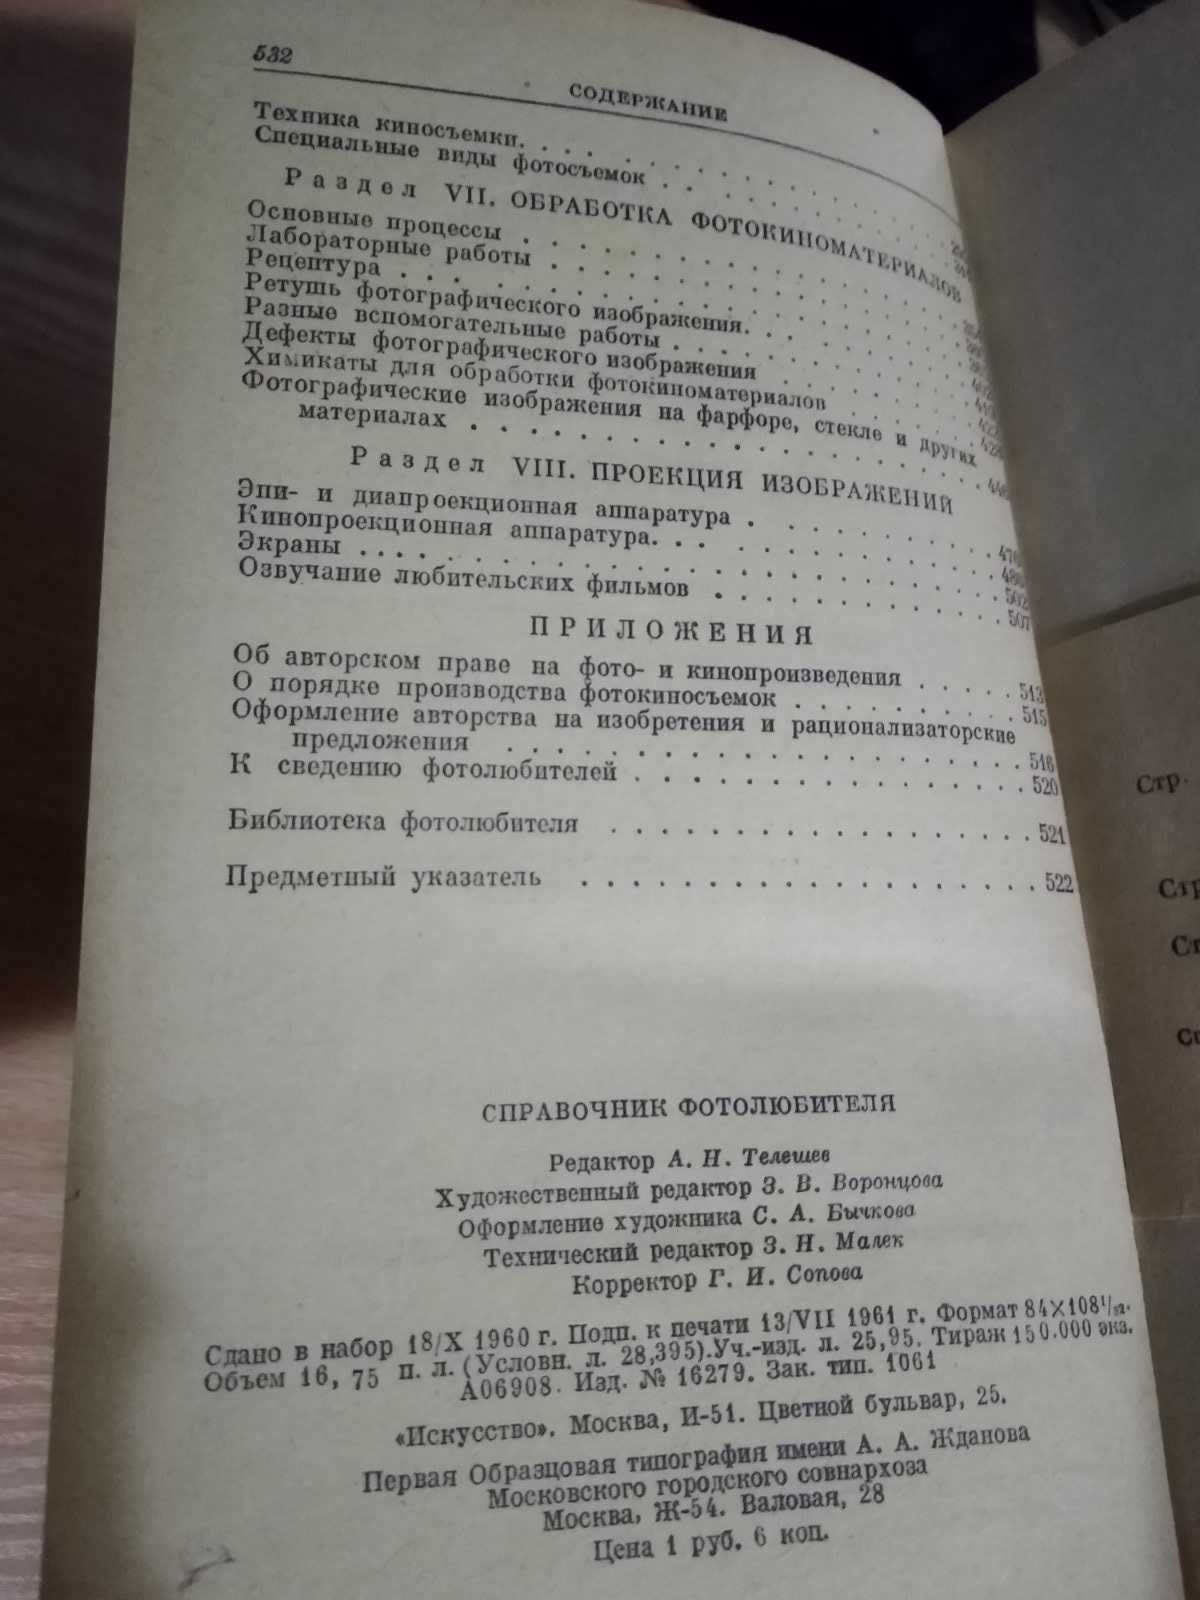 Справочник фотолюбителя. Е.А. Иофис (1961)